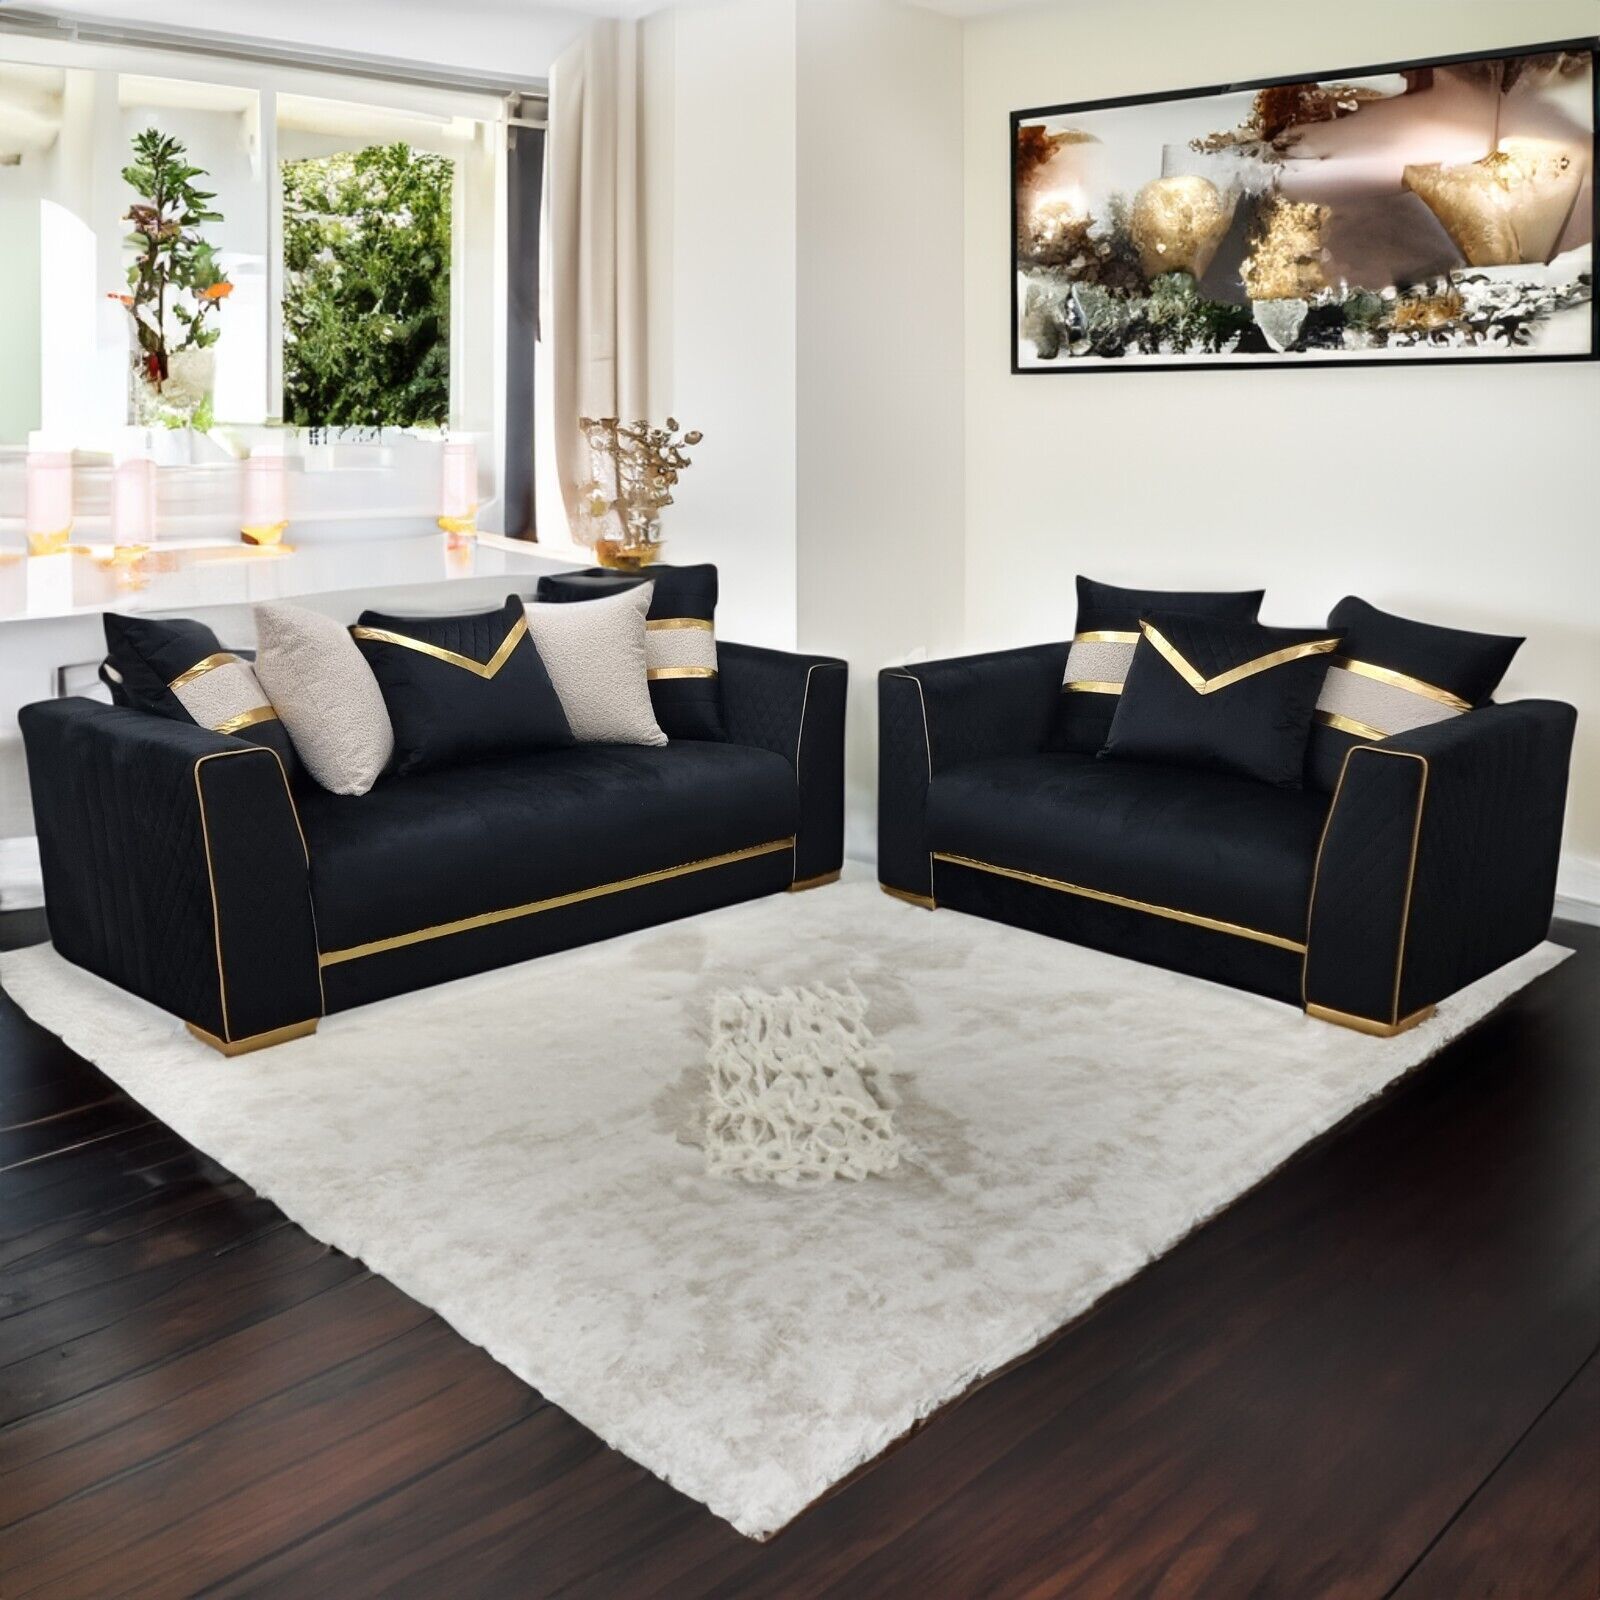 Furnituredw Empire 3 & 2 Seater Velvet Sofa Set Black & Gold For Living  Room | Ebay With Regard To Black Velvet Sofas (View 14 of 15)